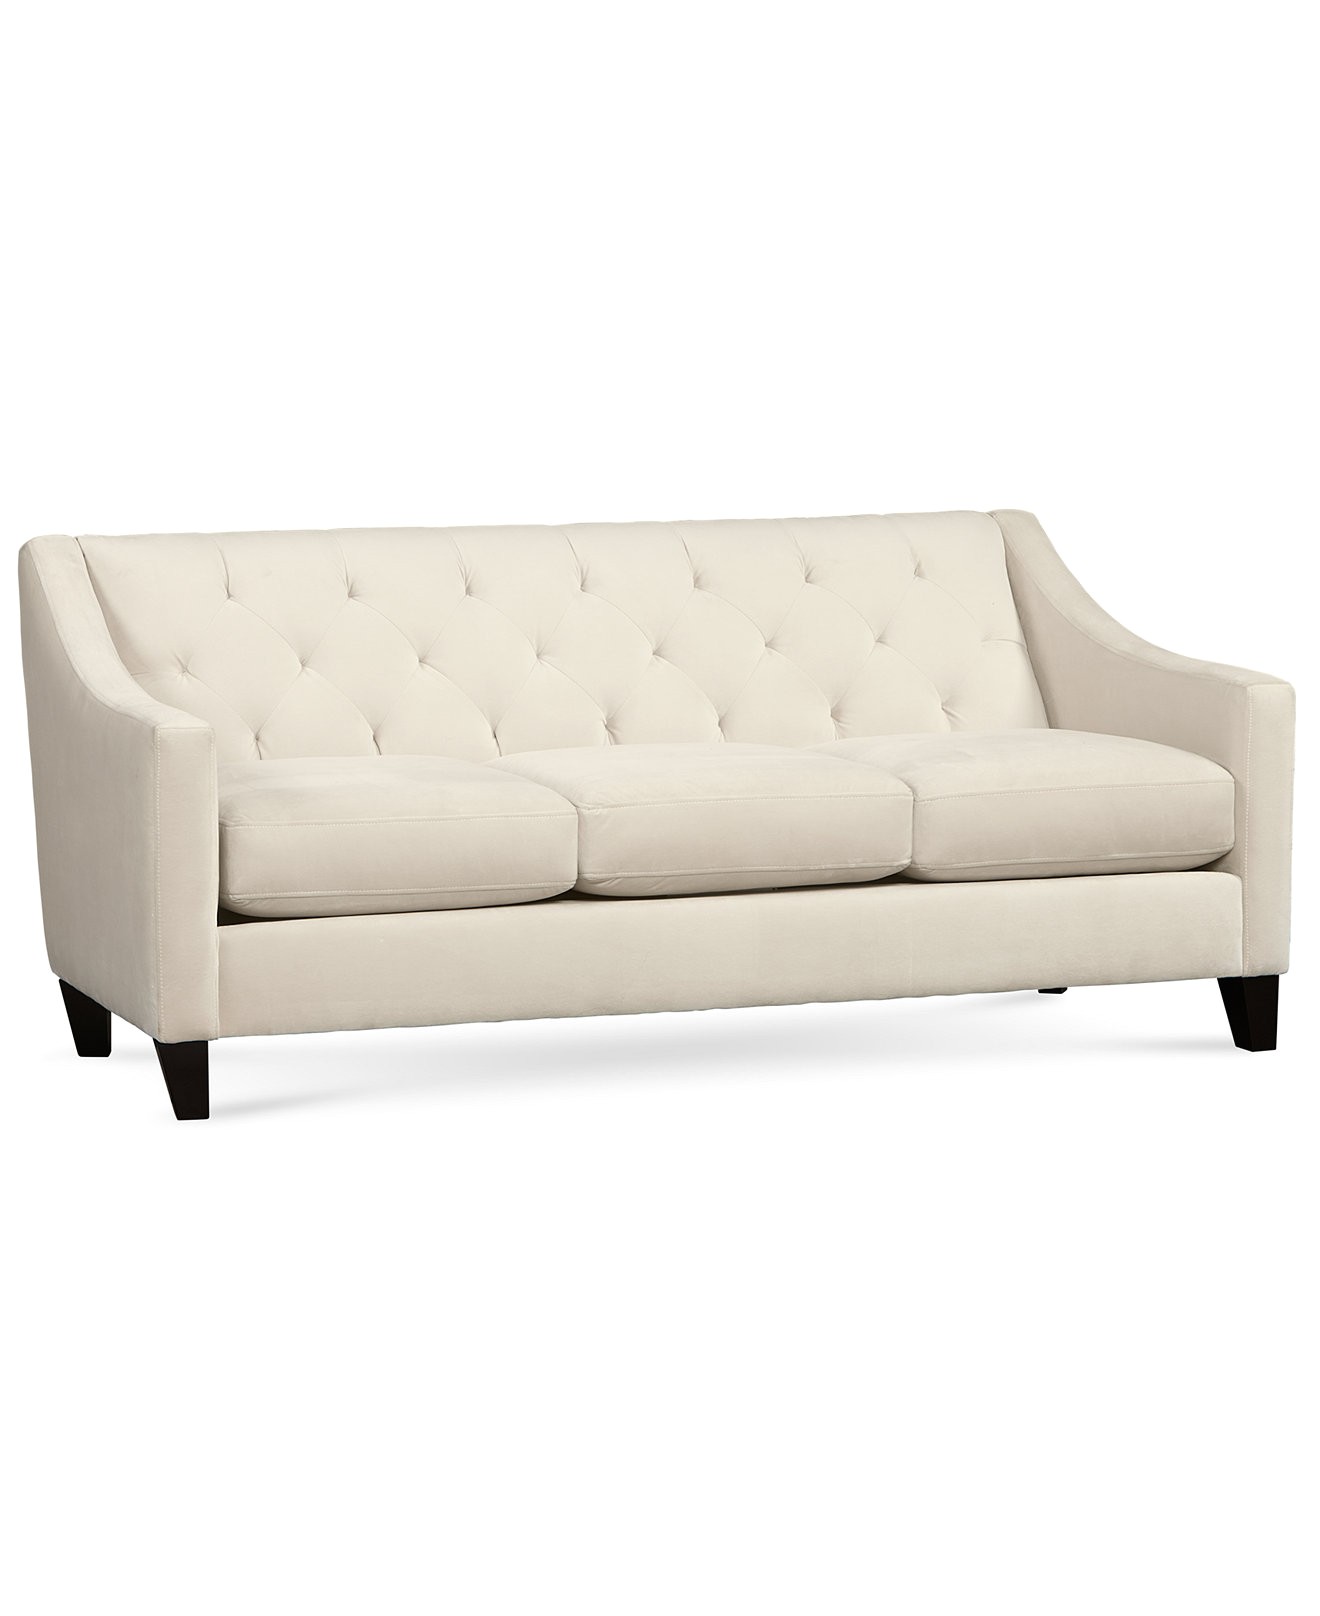 full size of living room joybird sofa white tufted grey velvet couch leather chloe sofas